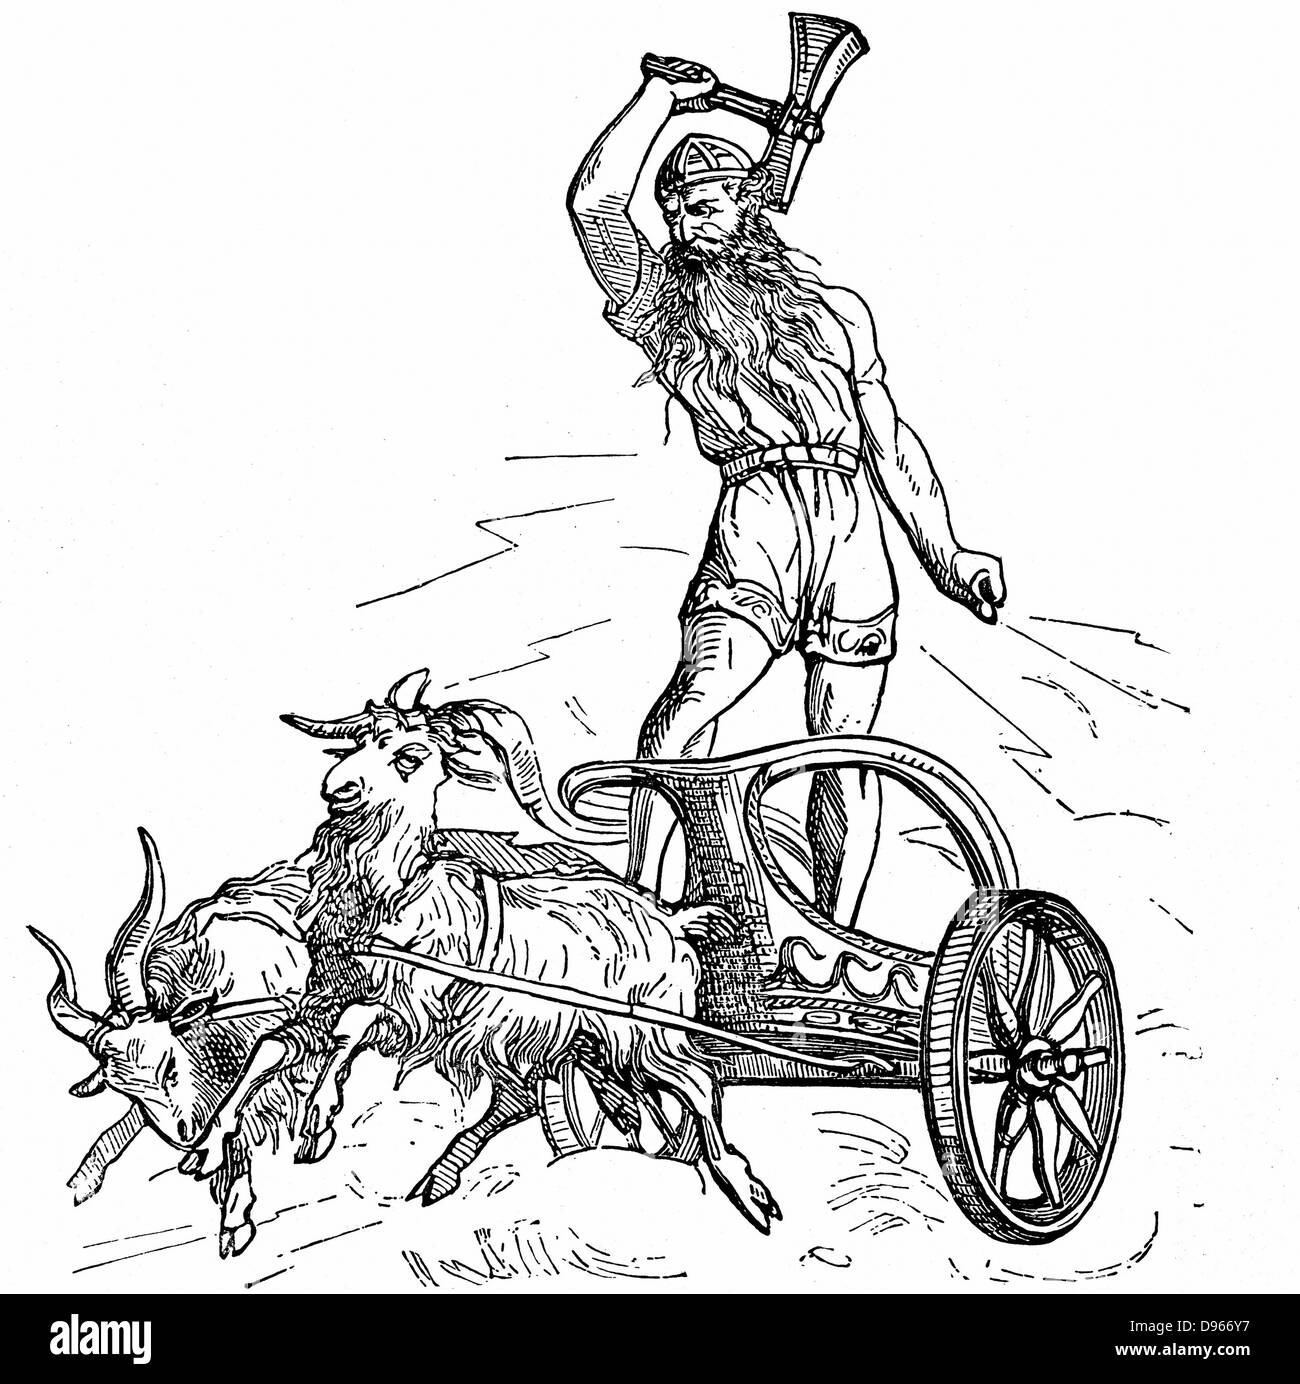 Thor fils de Woden ou Odin, le deuxième Dieu dans l'ancien panthéon scandinave, école en char attelé de chèvres et brandissant son marteau, symbolisant le tonnerre et la foudre. Gravure sur bois. Banque D'Images